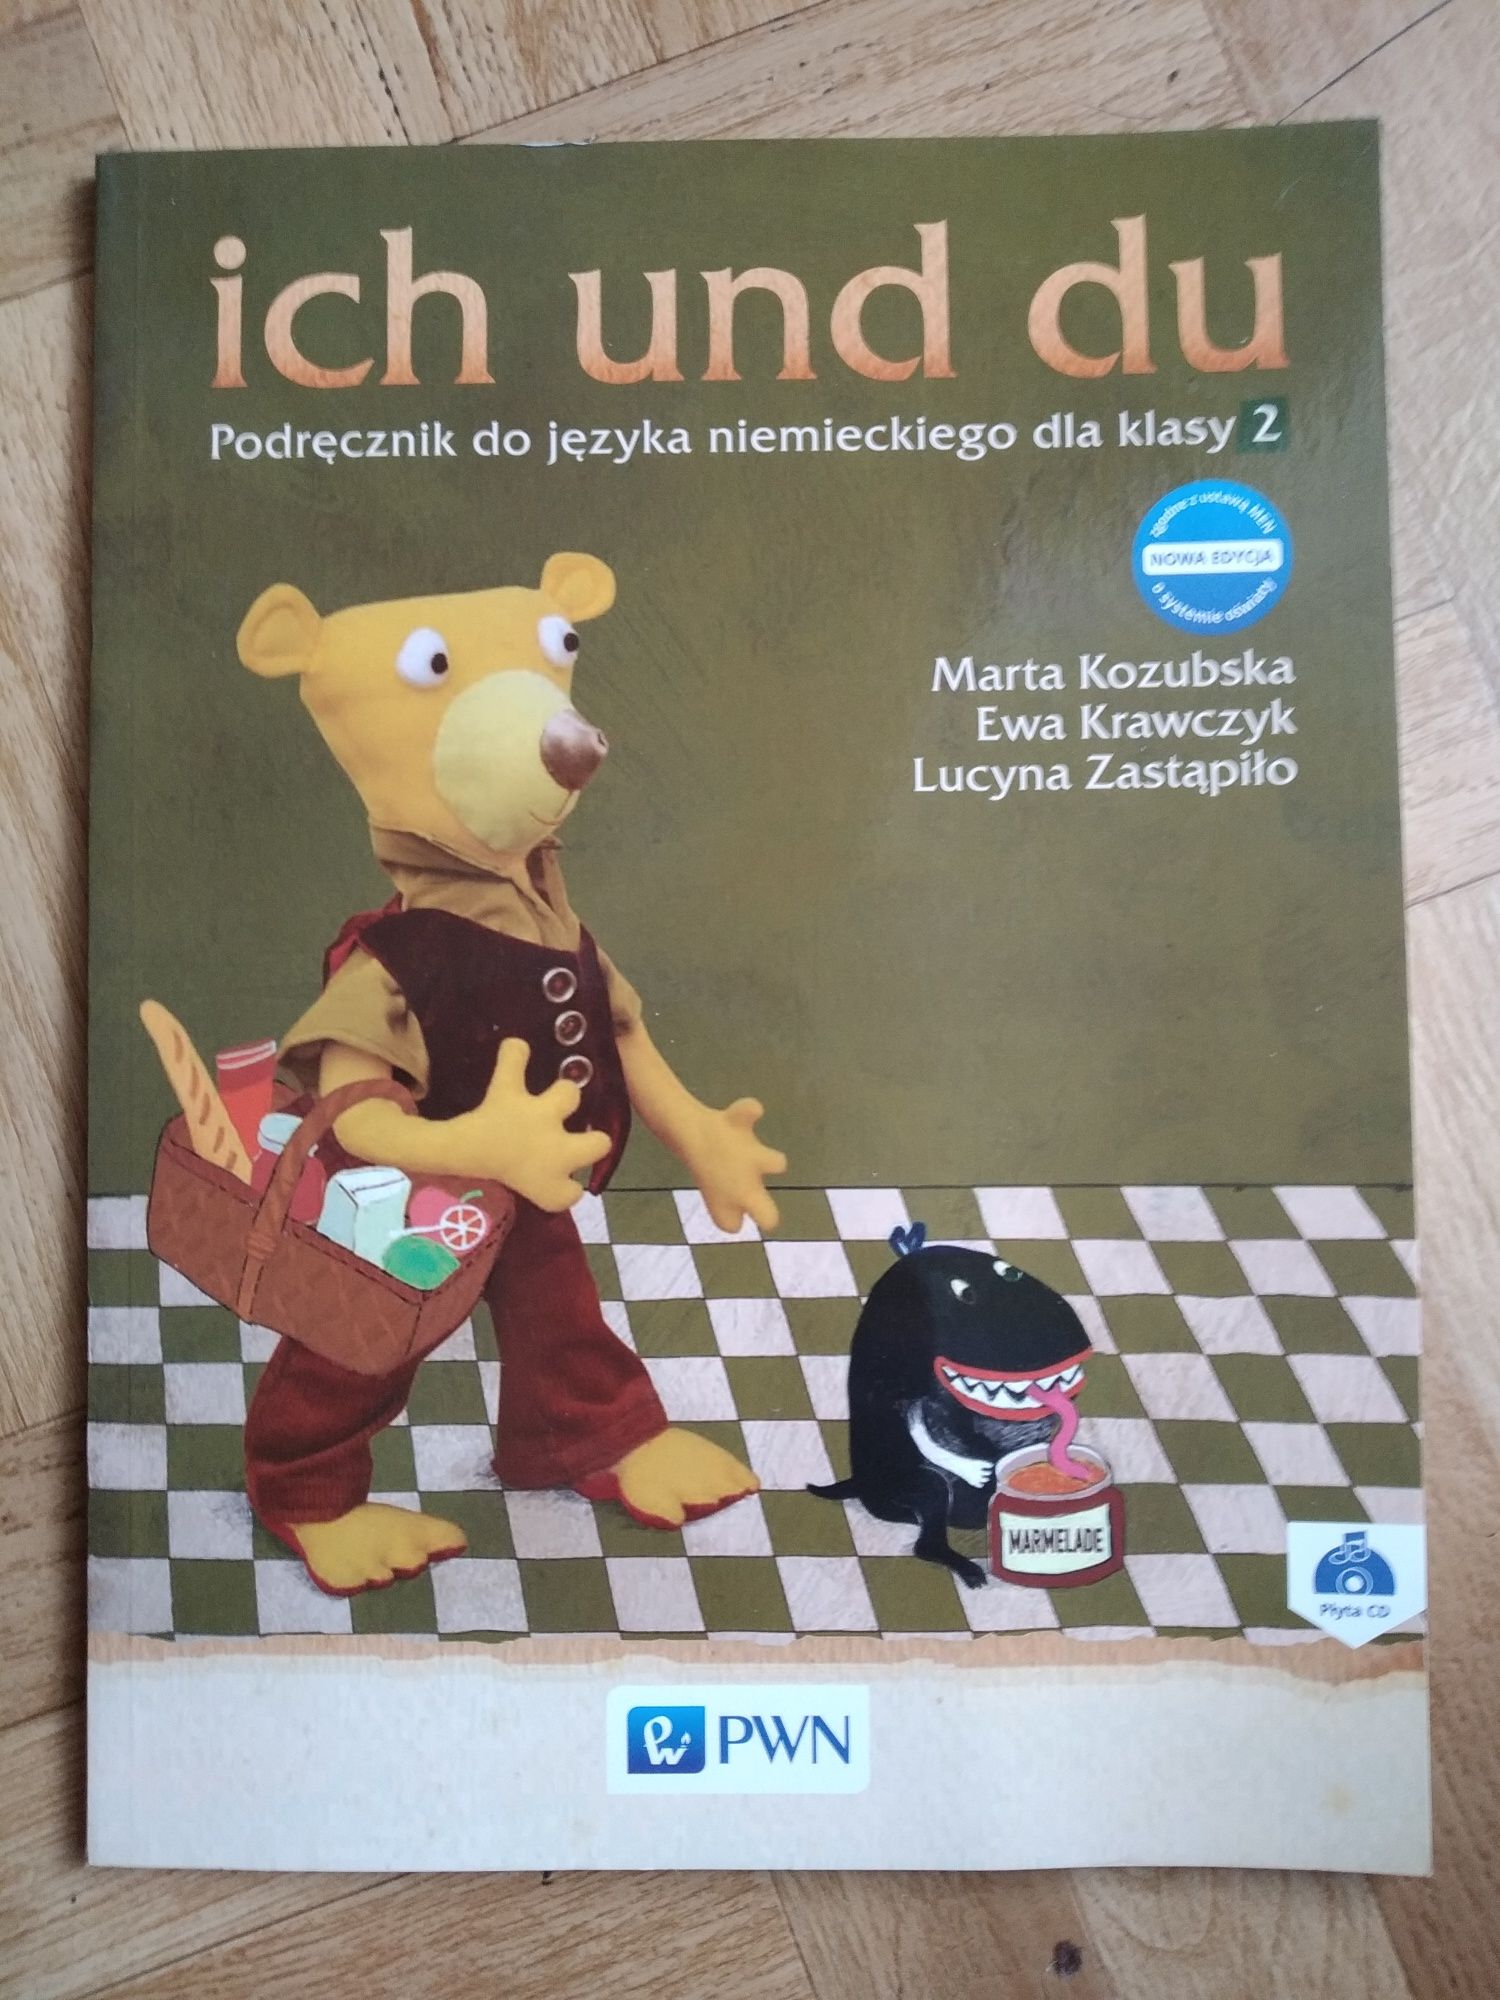 Podręcznik do języka niemieckiego dla klasy 2 ich und du